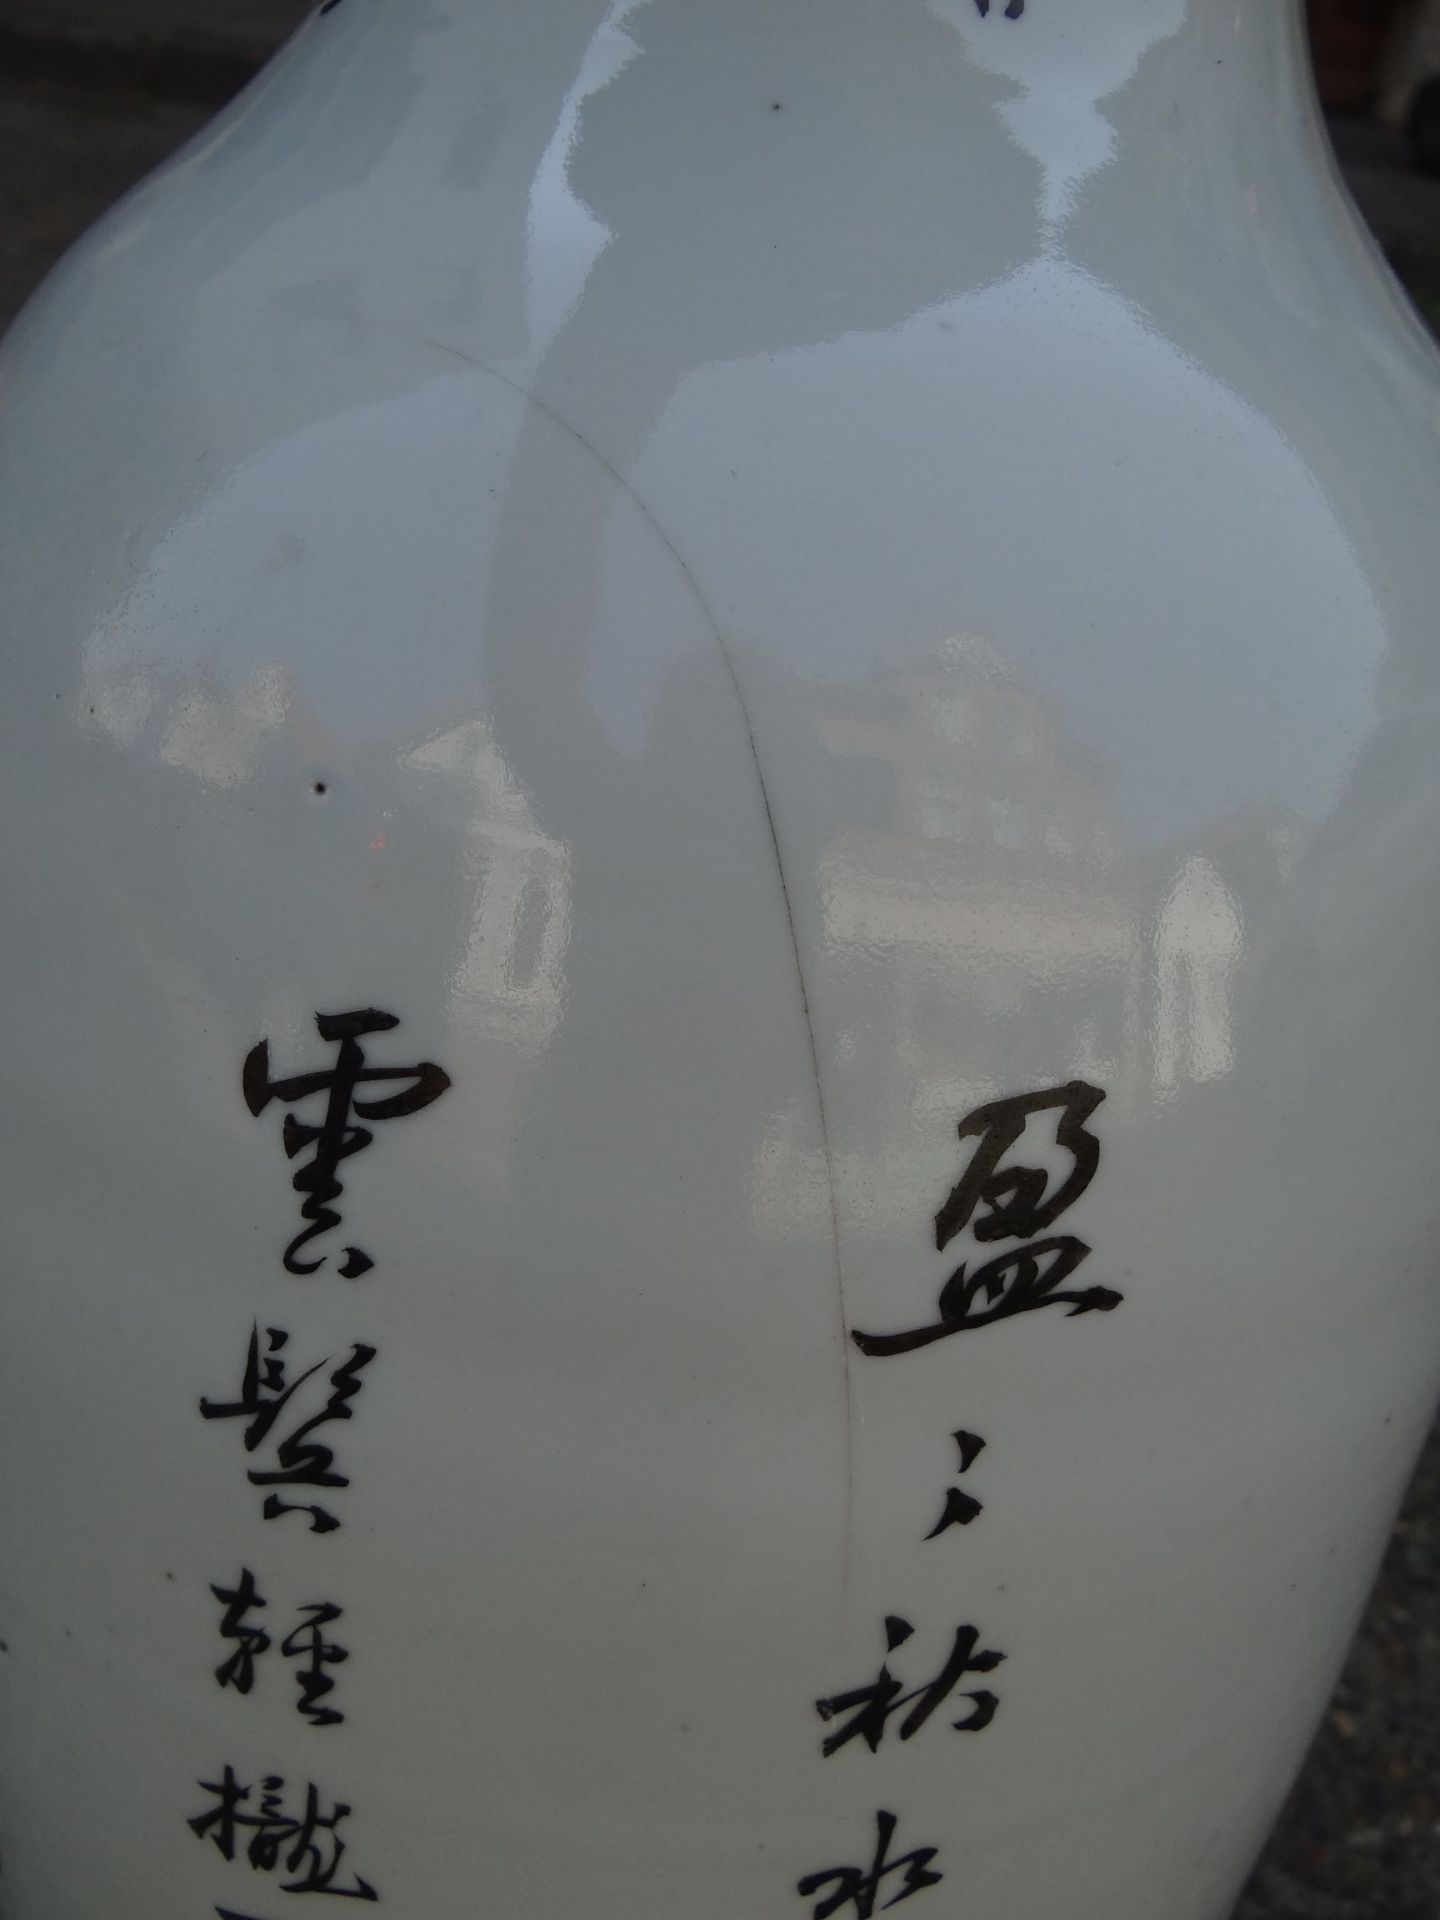 *hohe China-Vase mit figürlicher Malerei, älter, H-59 cm, D-19 cm, ein langer Spannungsri - Bild 7 aus 9